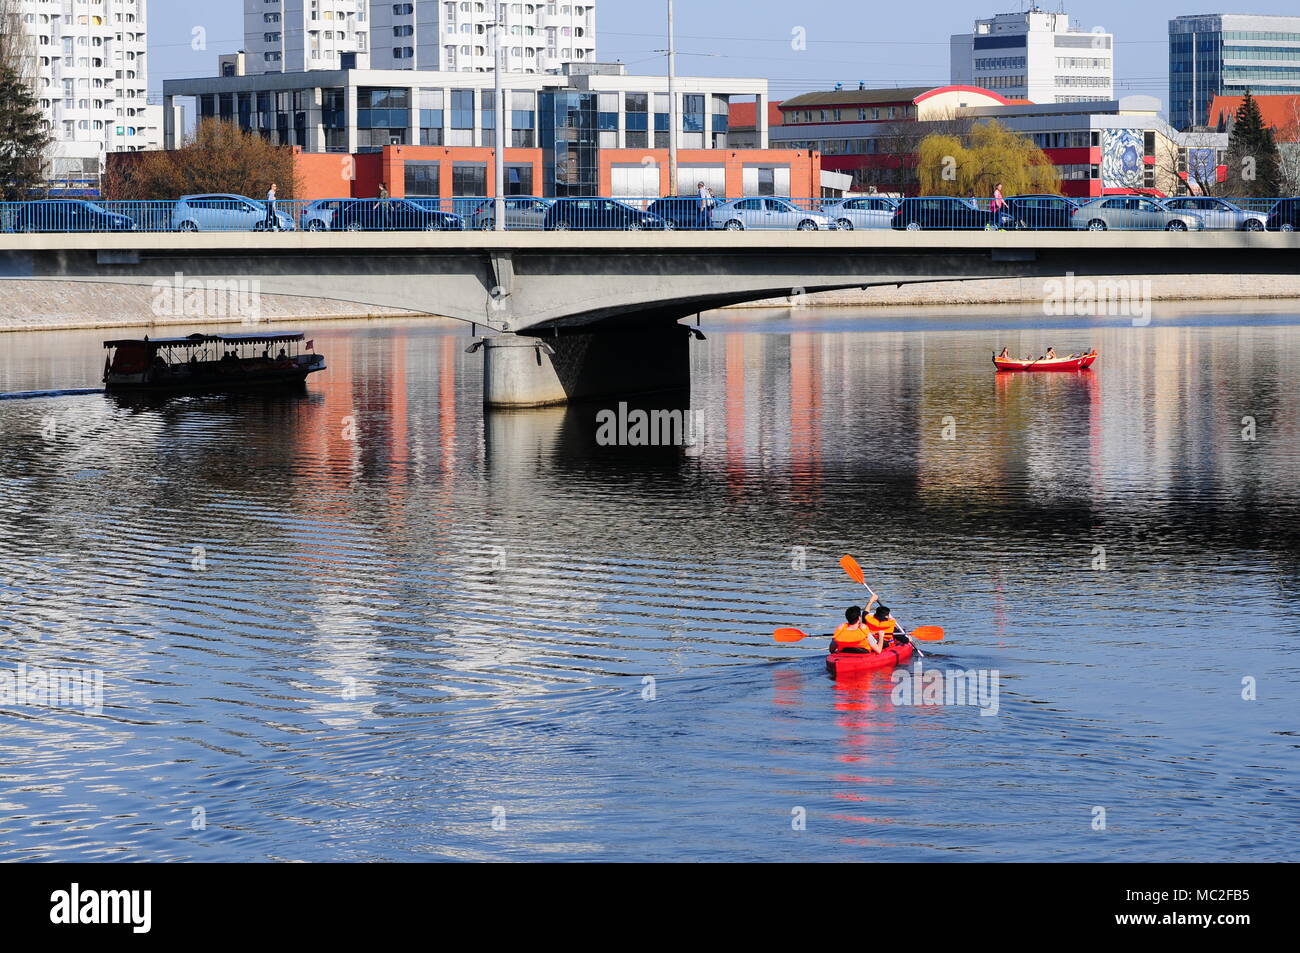 Personnes kayak dans le centre-ville, sur la rivière Odra. Wroclaw. Pologne Avril 2018 Banque D'Images